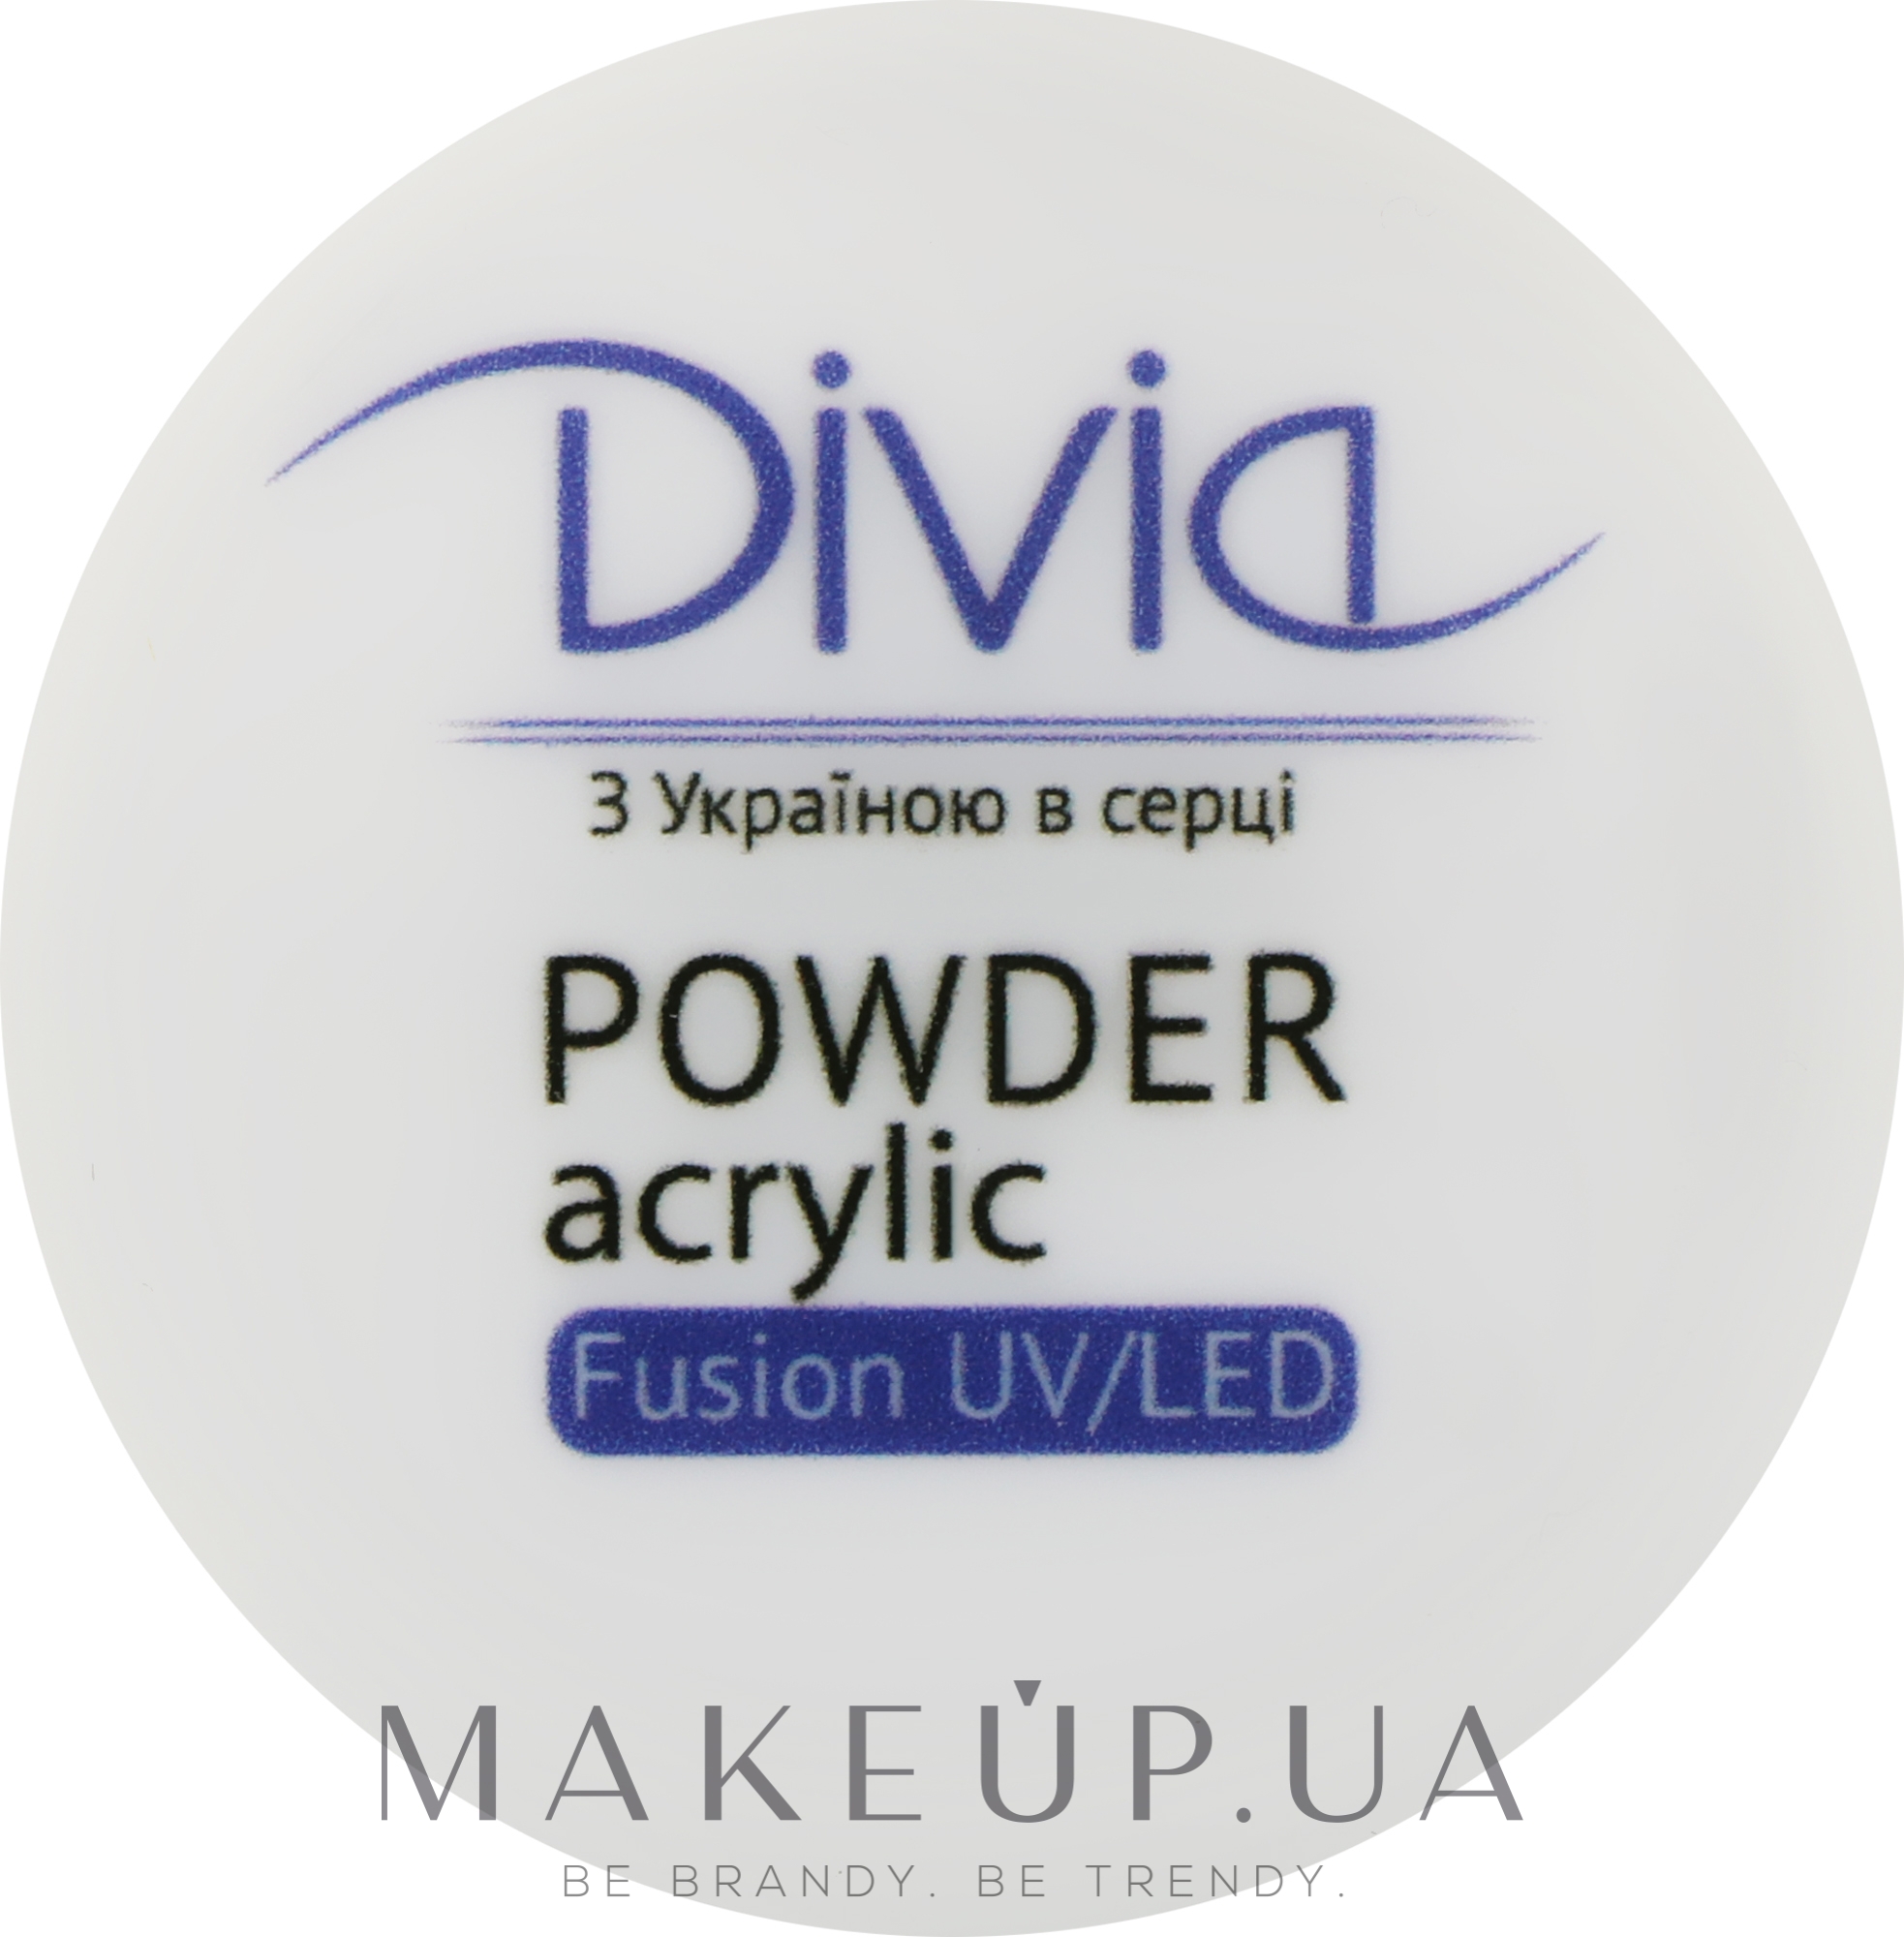 Акрилова пудра для нарощування нігтів, Di1814 - Divia Acrylic Powder Fusion UV/LED — фото 8g